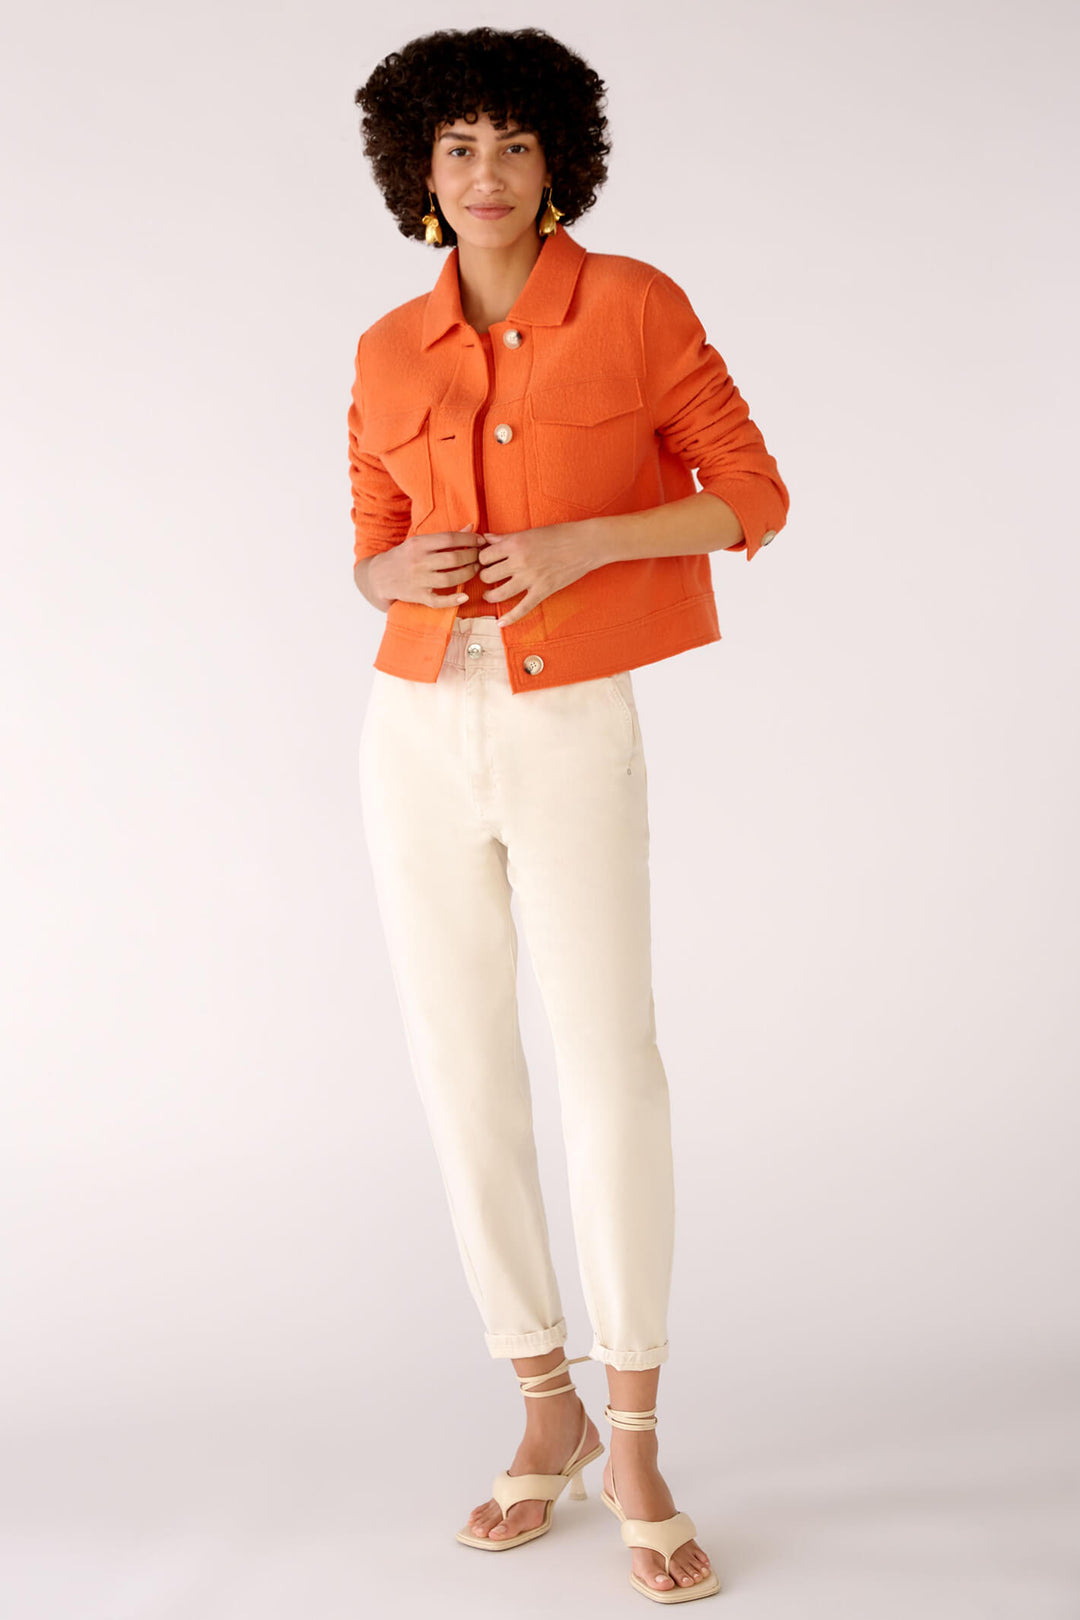 Oui 78167 Orange Wool Jacket - Olivia Grace Fashion